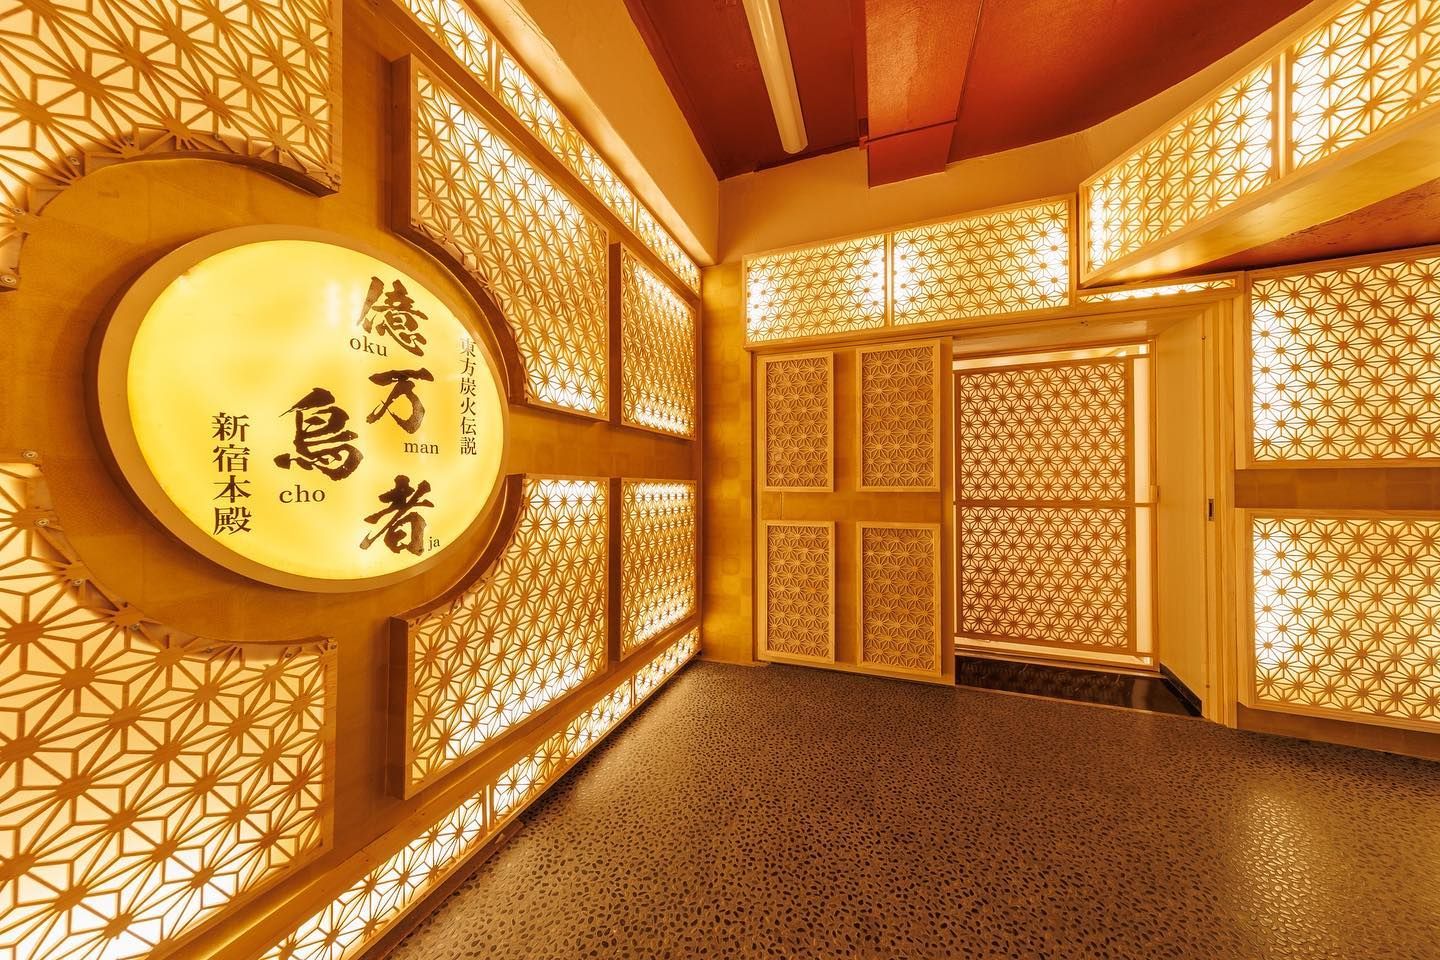 Toilet emas di Okumanchoja Jepang